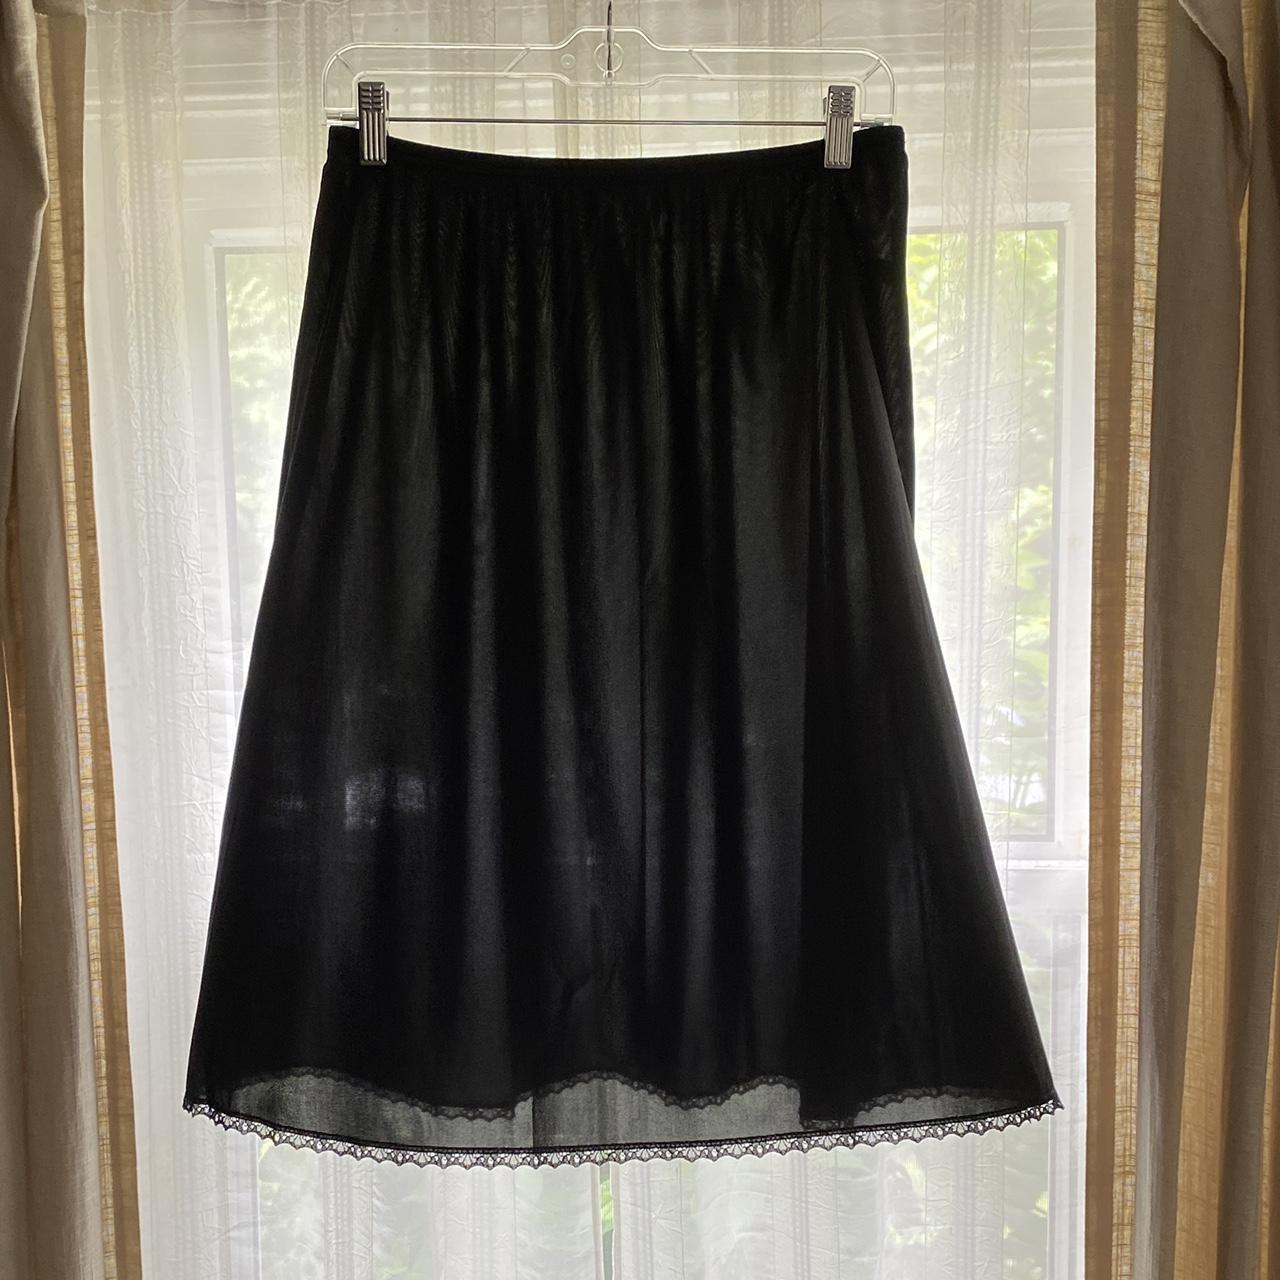 Vintage Slip Skirt Vintage Lingerie Whimsygoth... - Depop